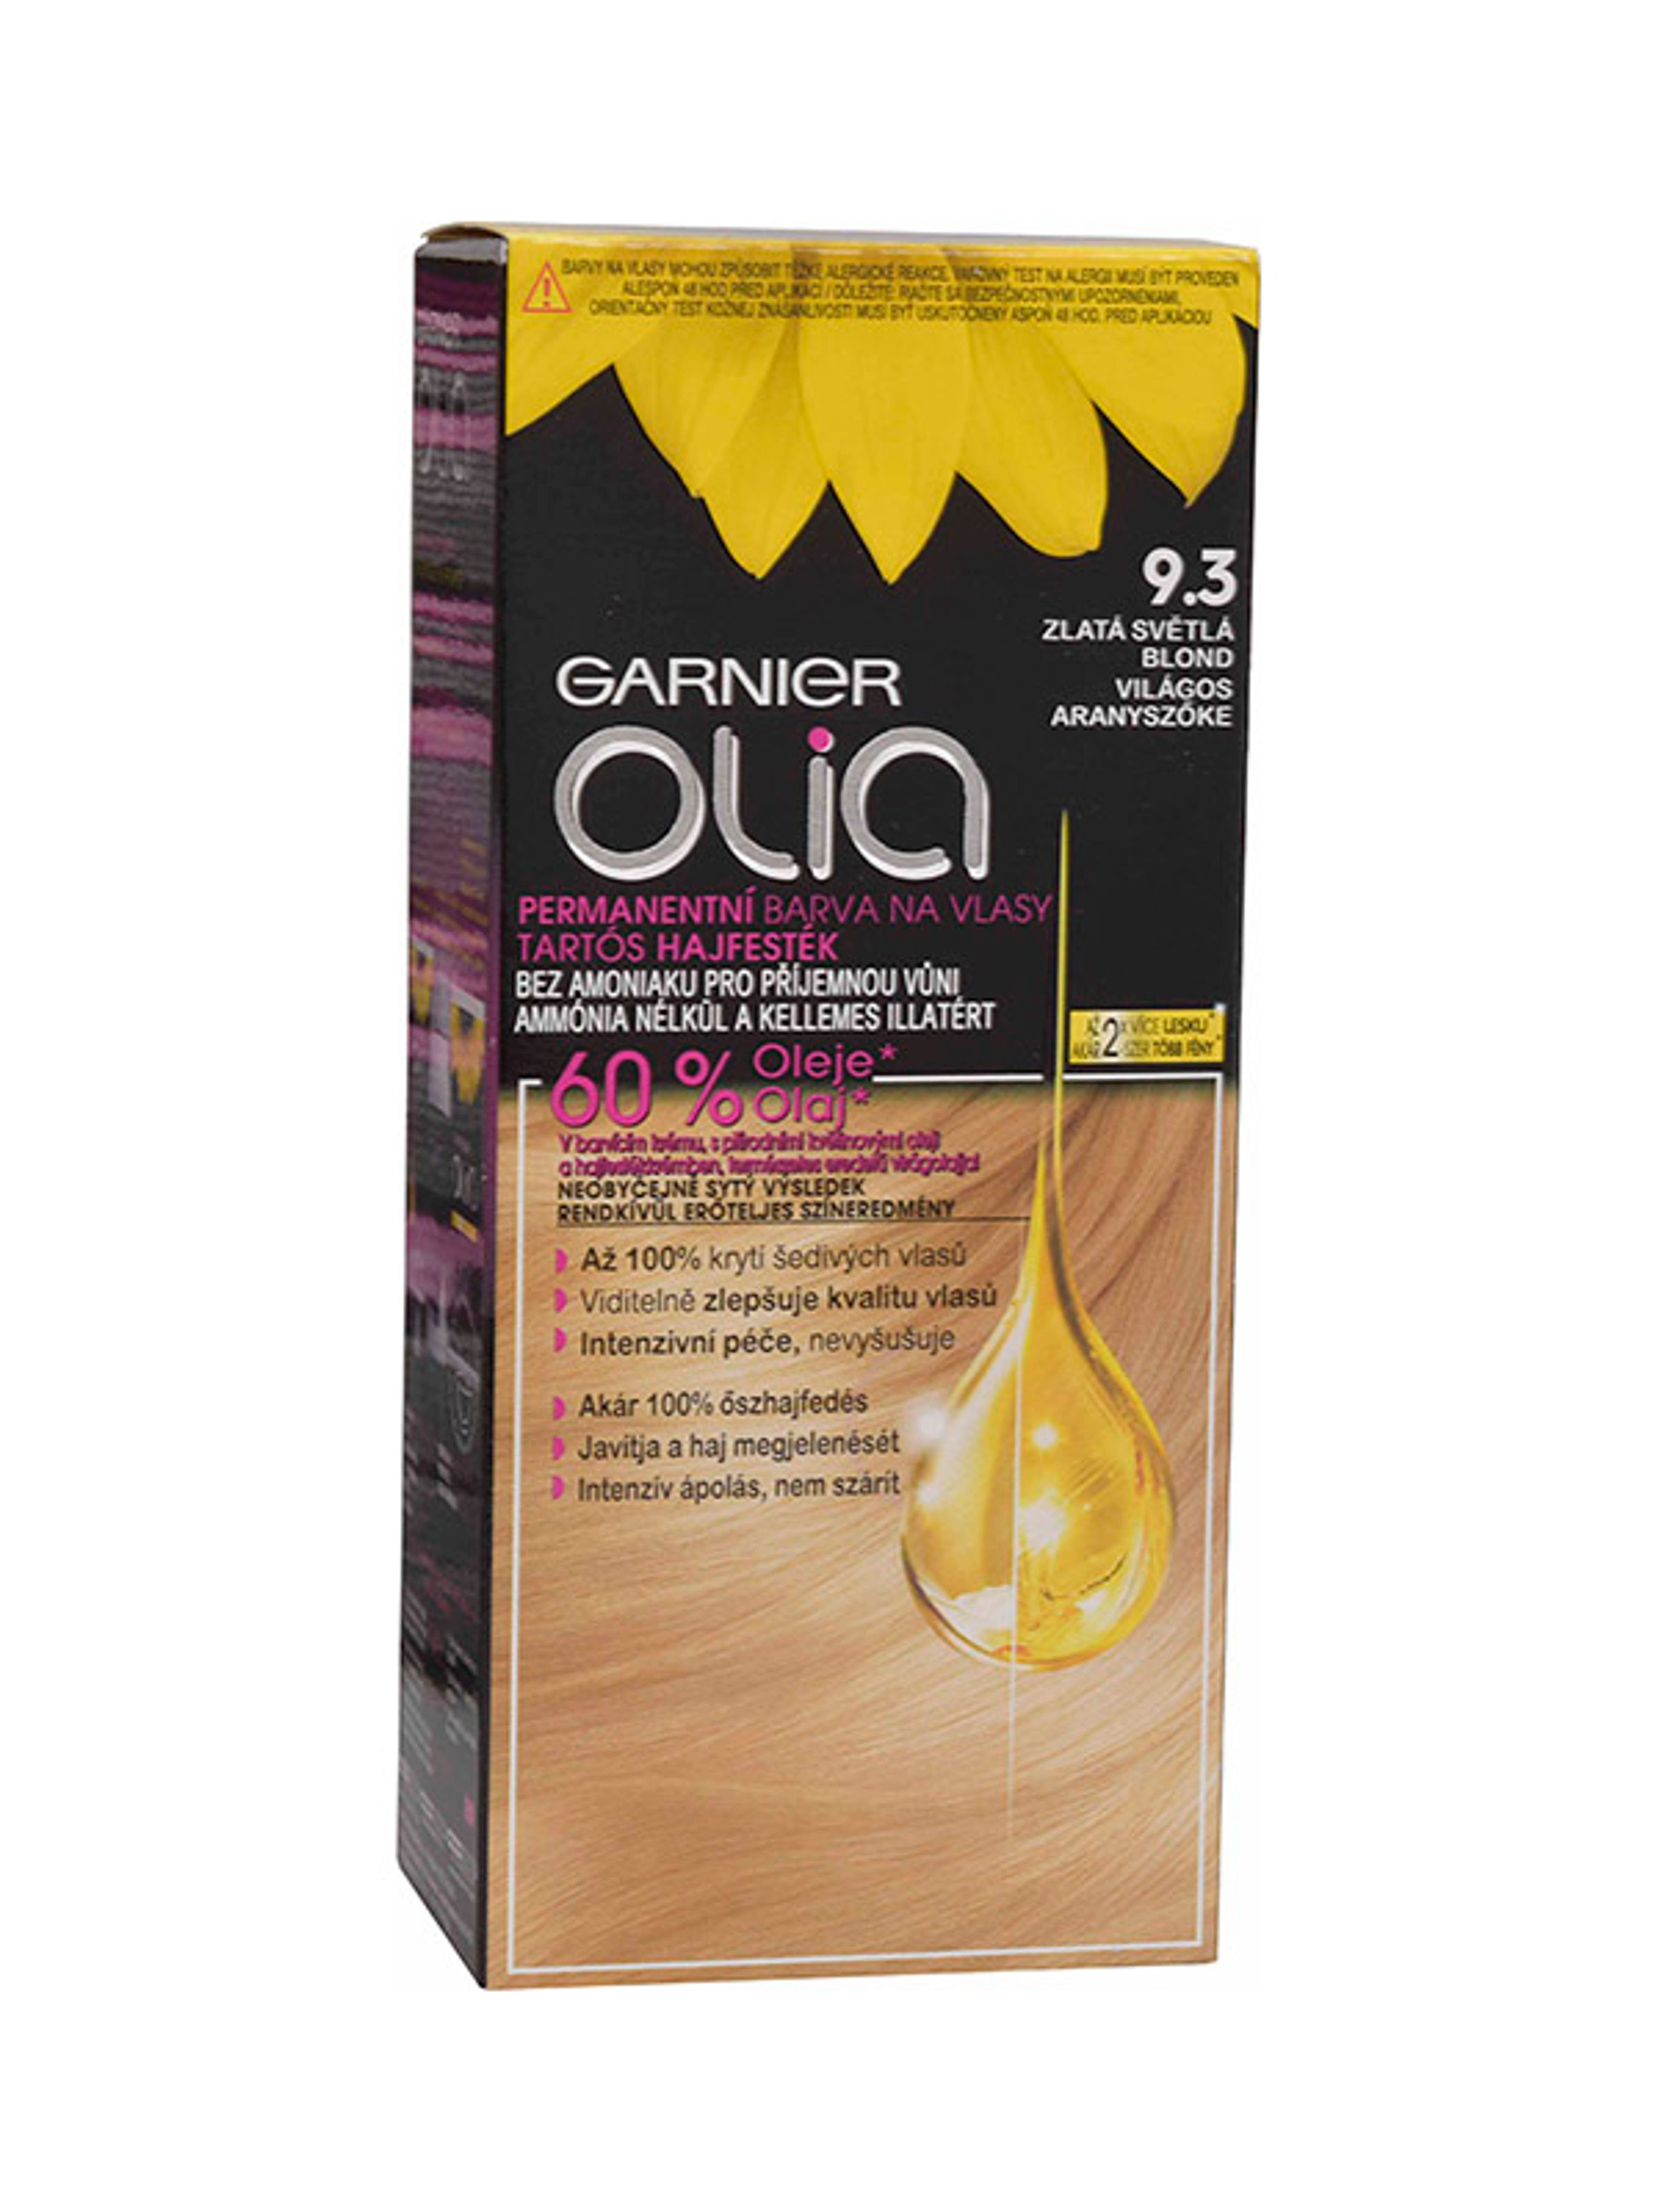 Garnier Olia tartós hajfesték 9.3 Világos aranyszőke - 1 db